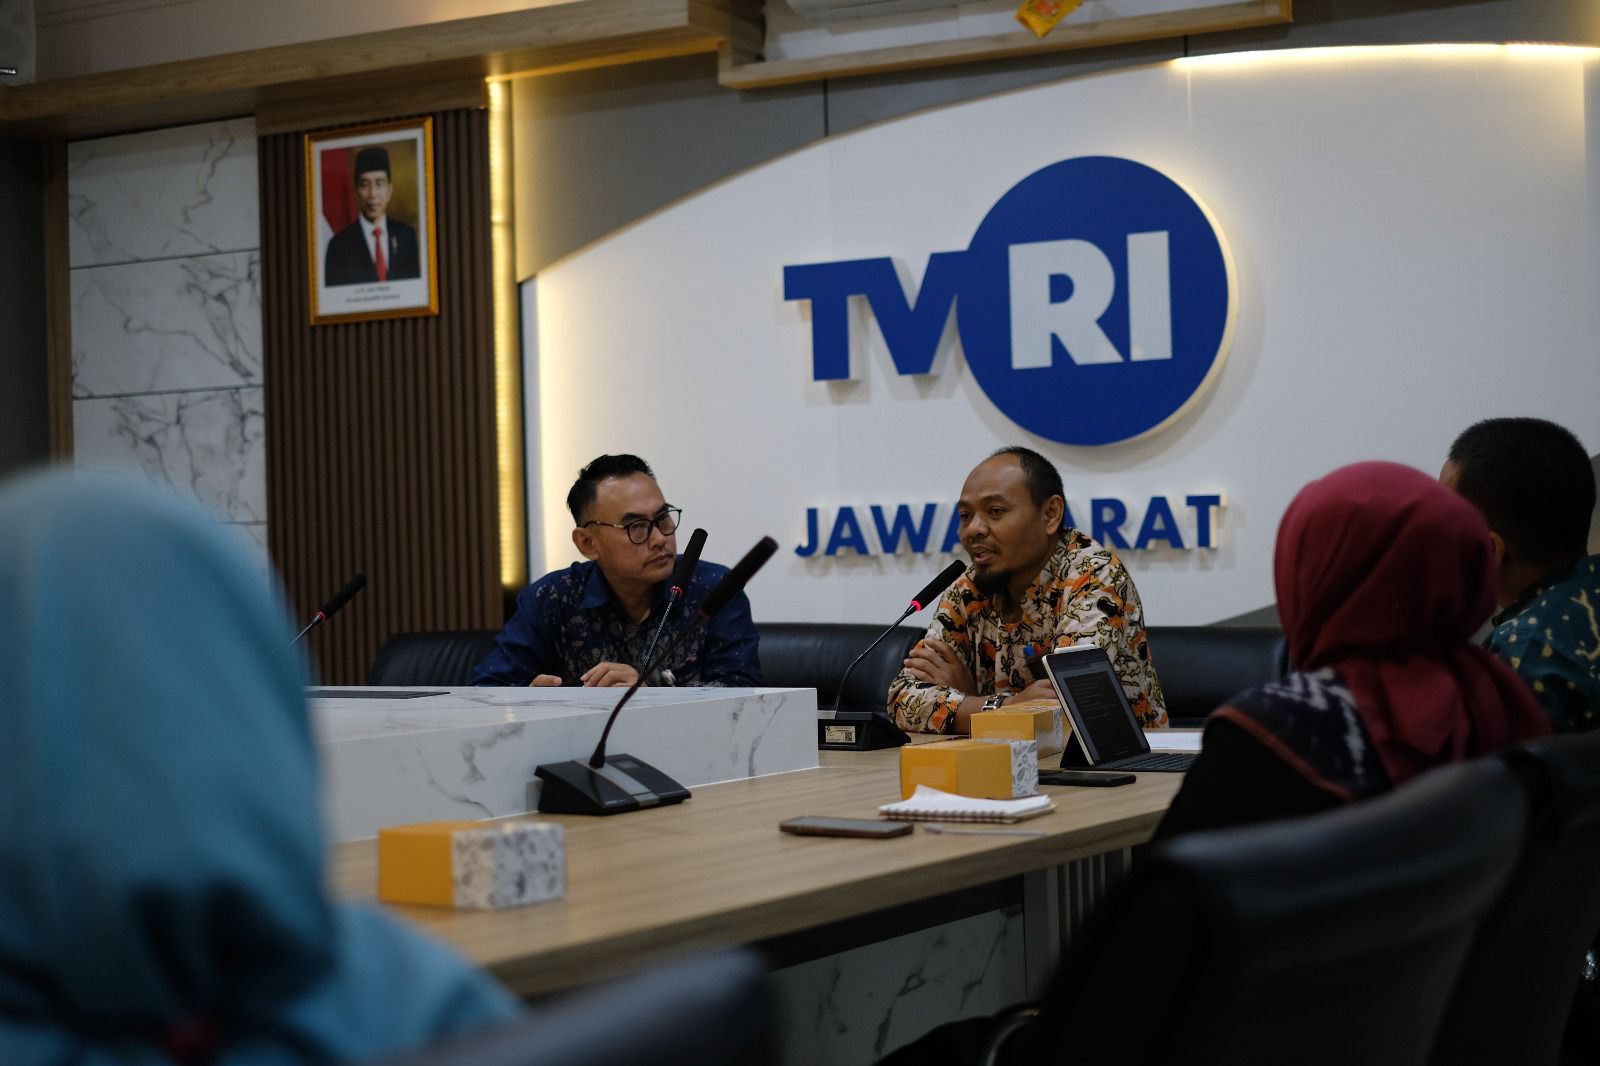 PLN dan TVRI Jawa Barat Sinergi Edukasi Energi melalui Kegiatan Media Visit